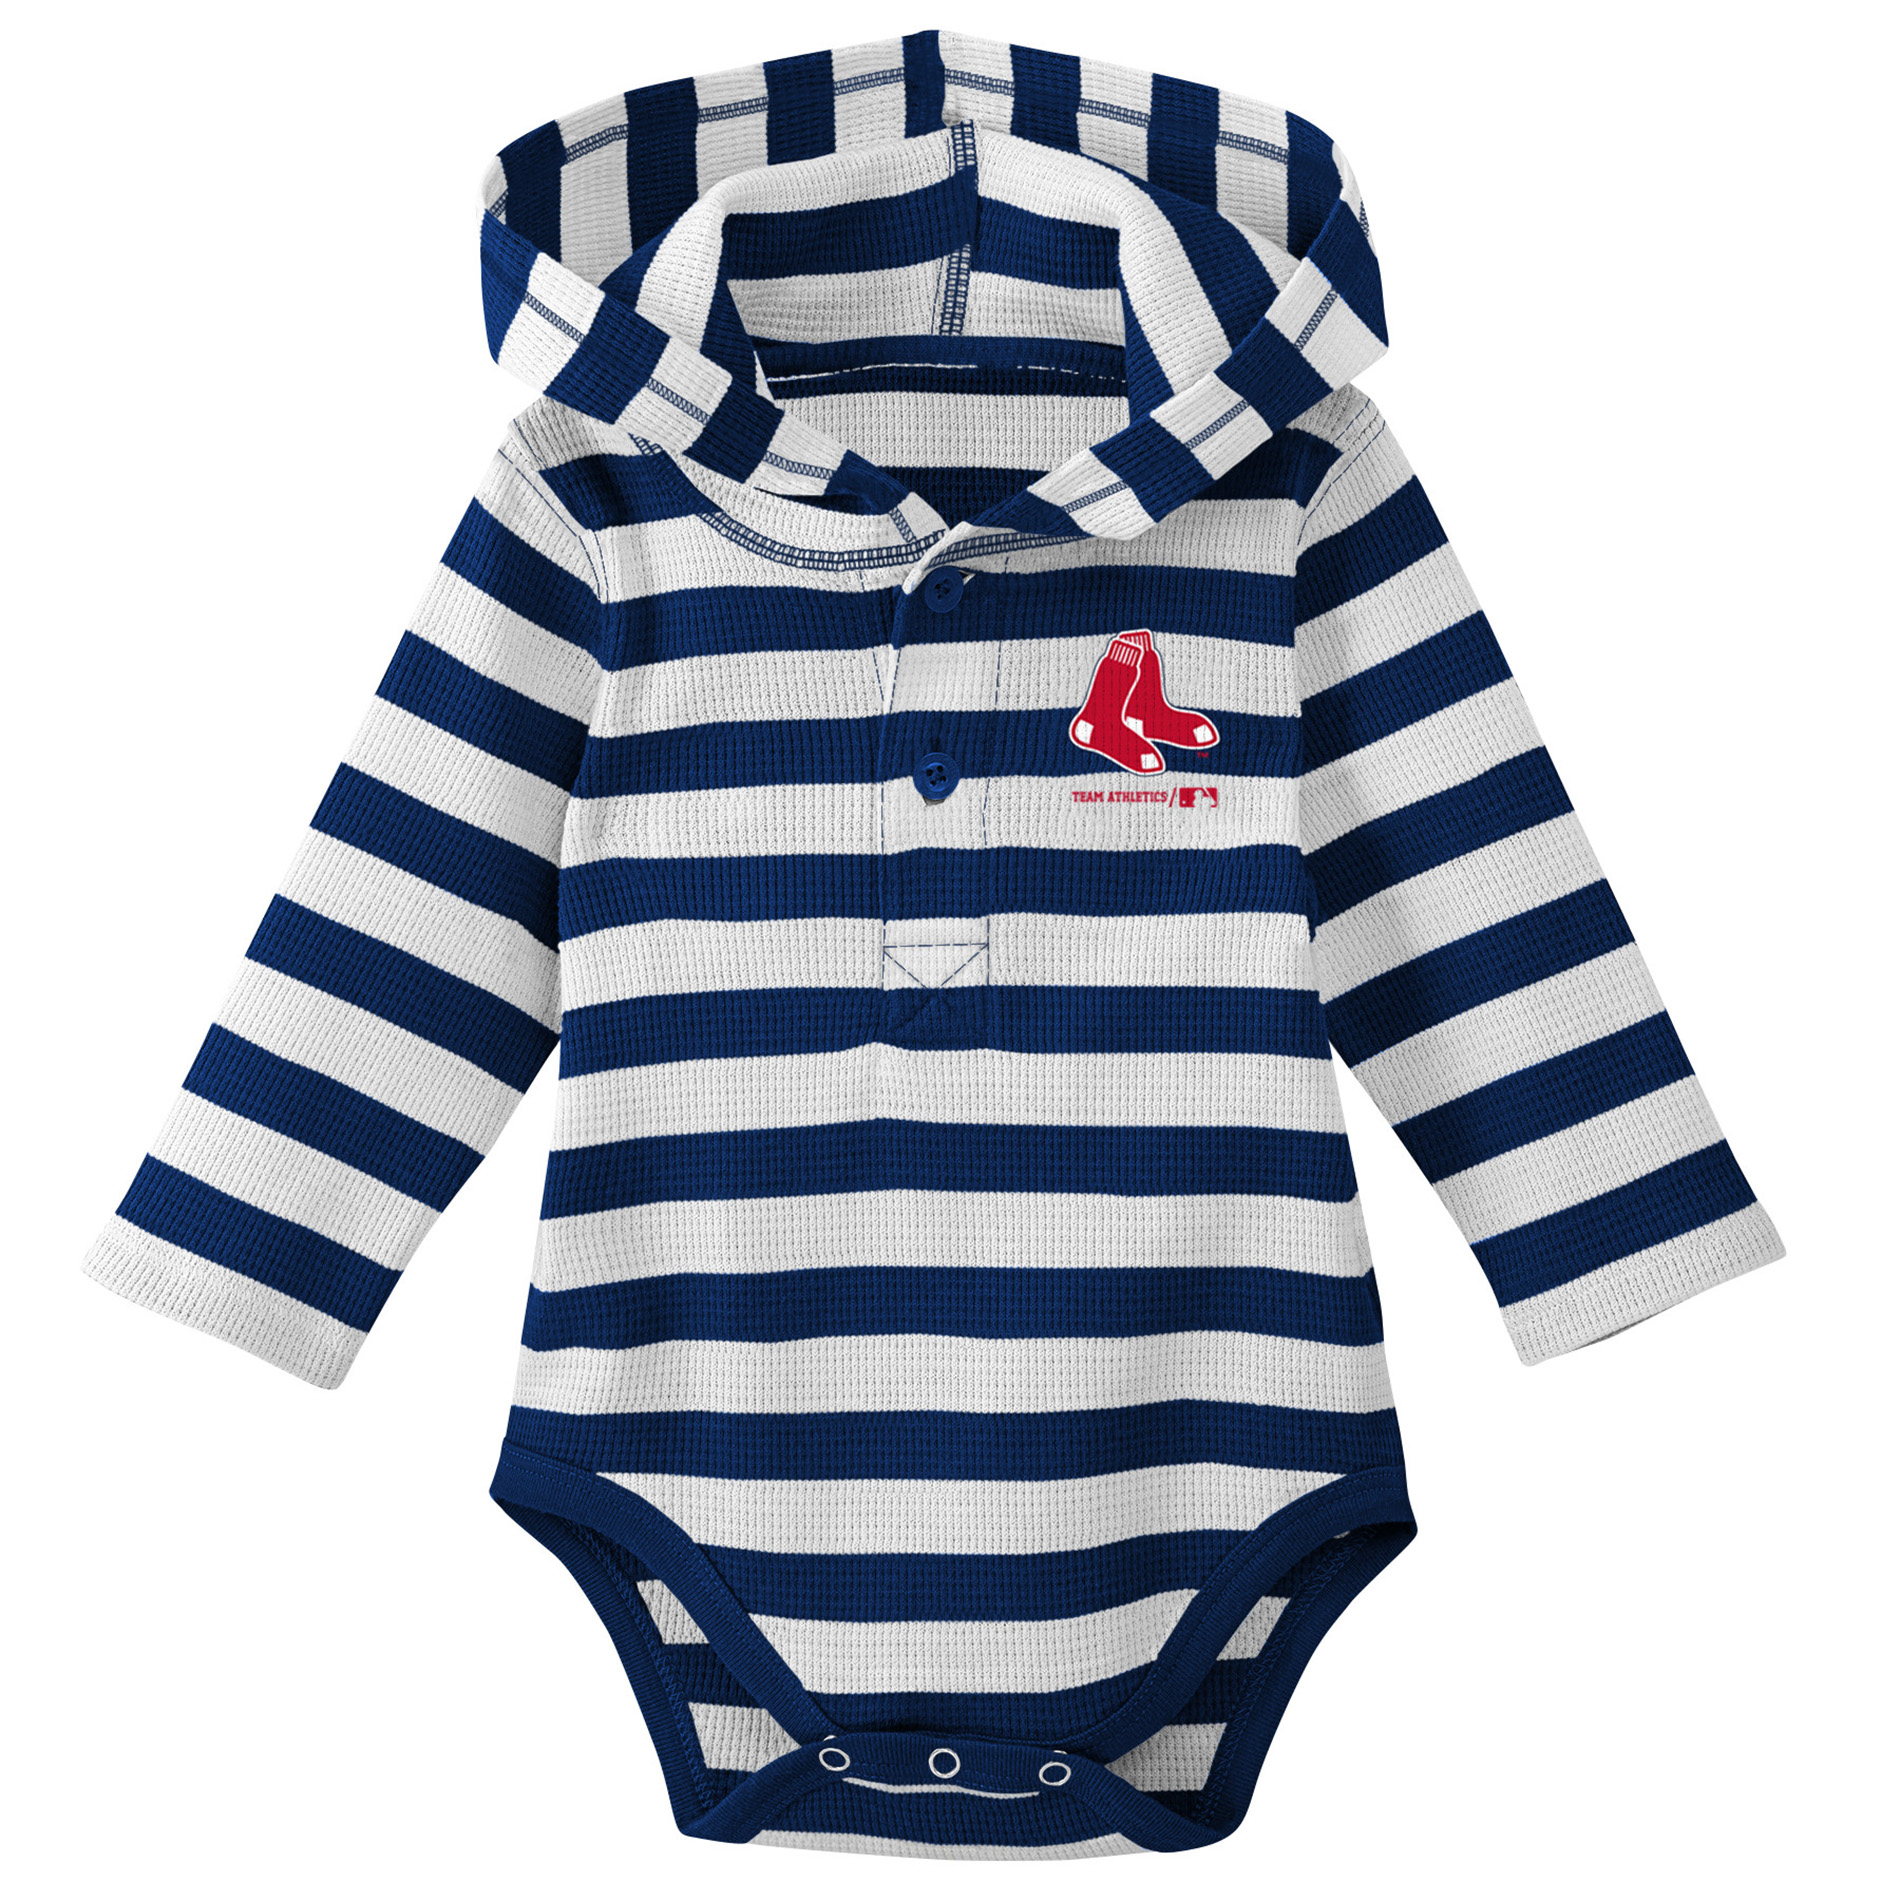 mlb infant clothing